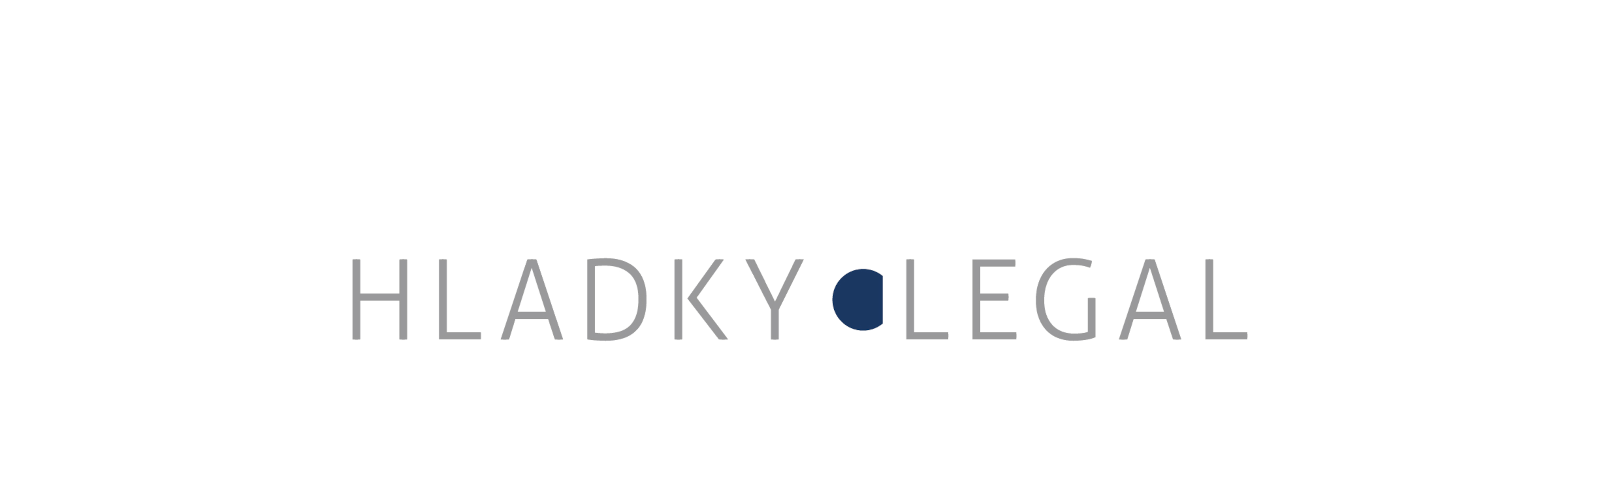 Logo Hladký Legal